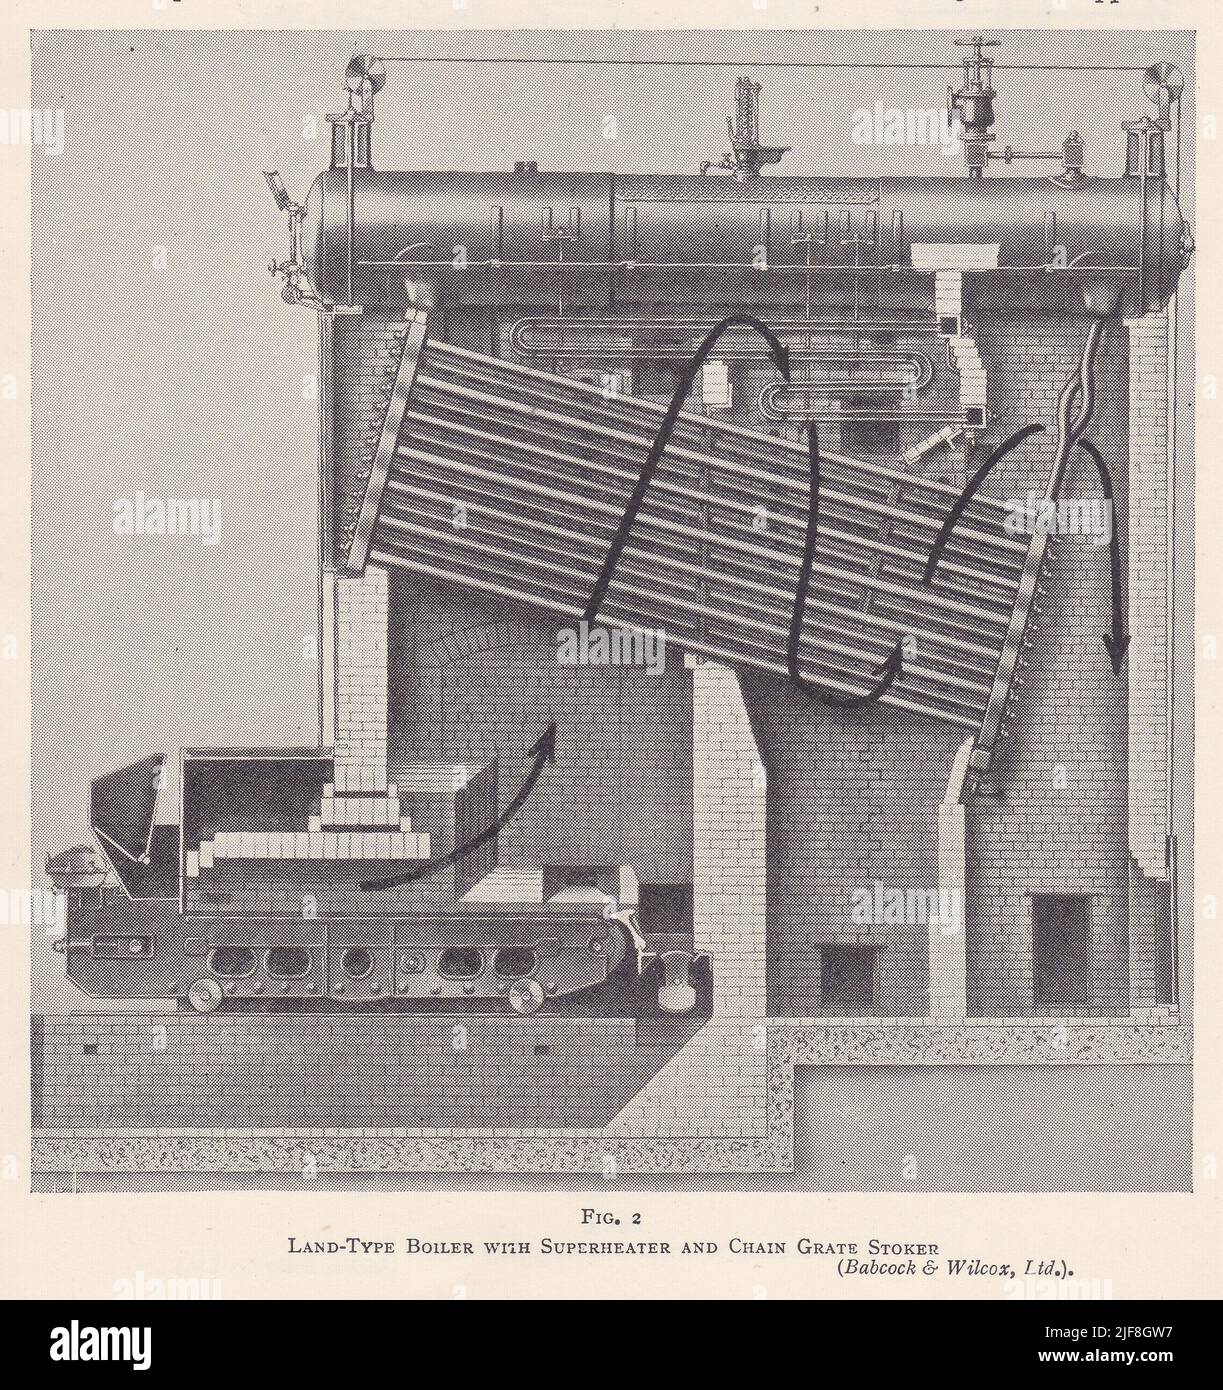 Ilustración vintage de una caldera tipo tierra con supercalentador y depósito de rejilla de cadena - Babcock & Wilcox. Ltd Foto de stock